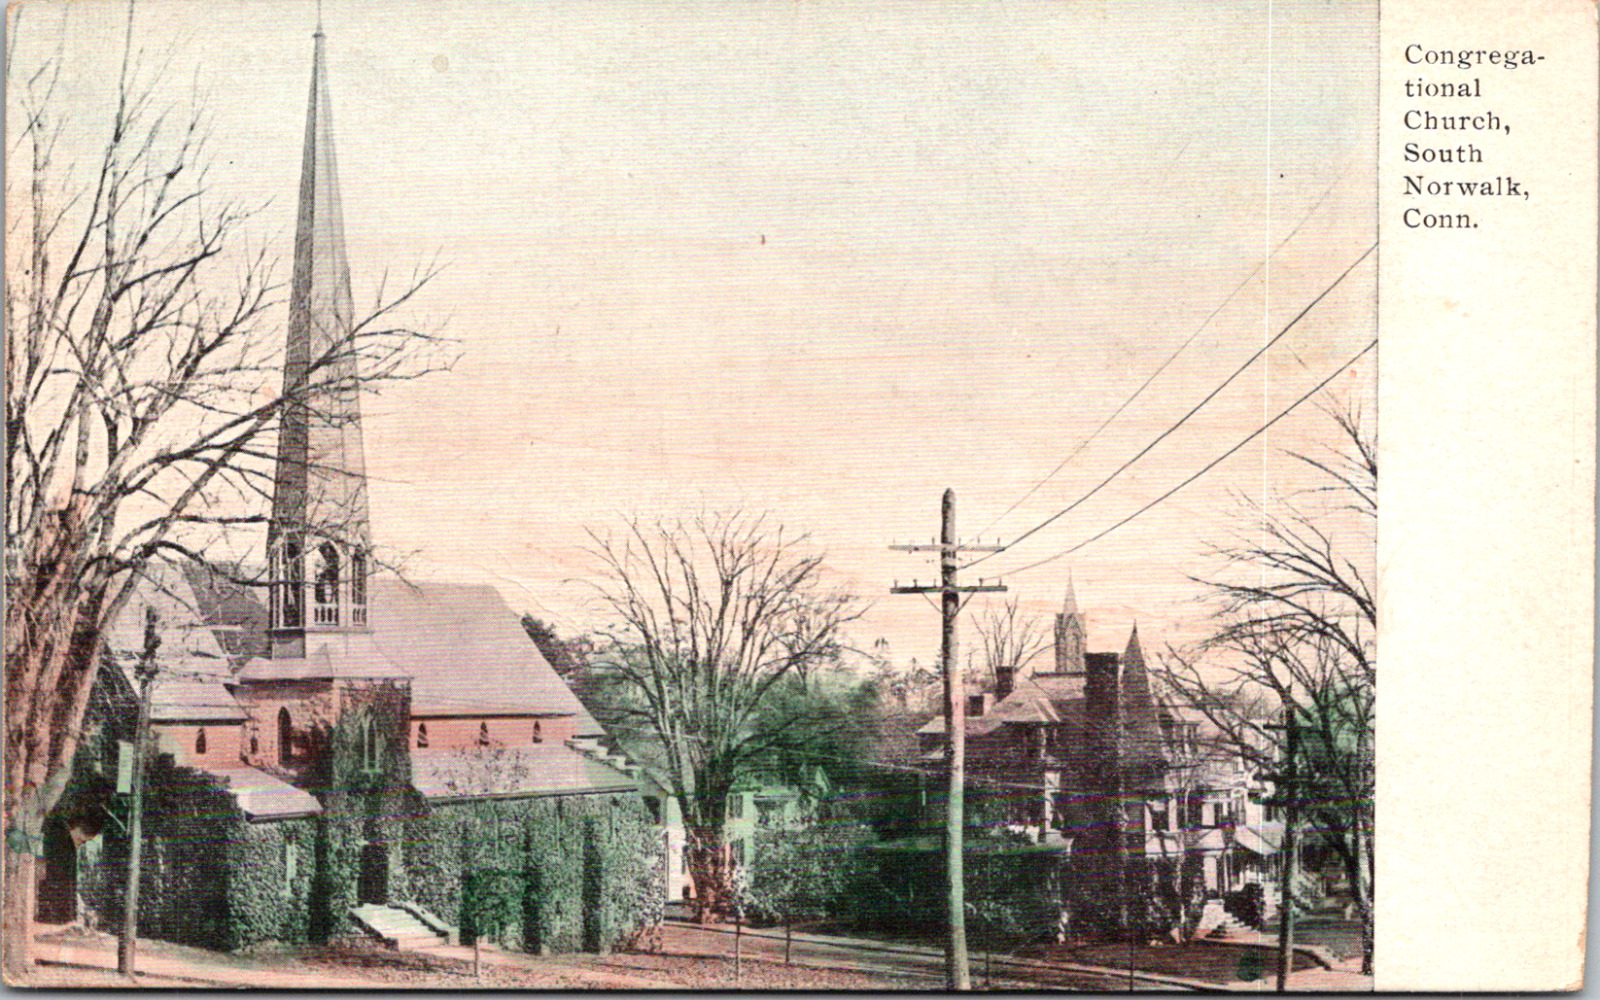 South Norwalk Connecticut CT Congregational Church Town Vintage C. 1903 Postcard